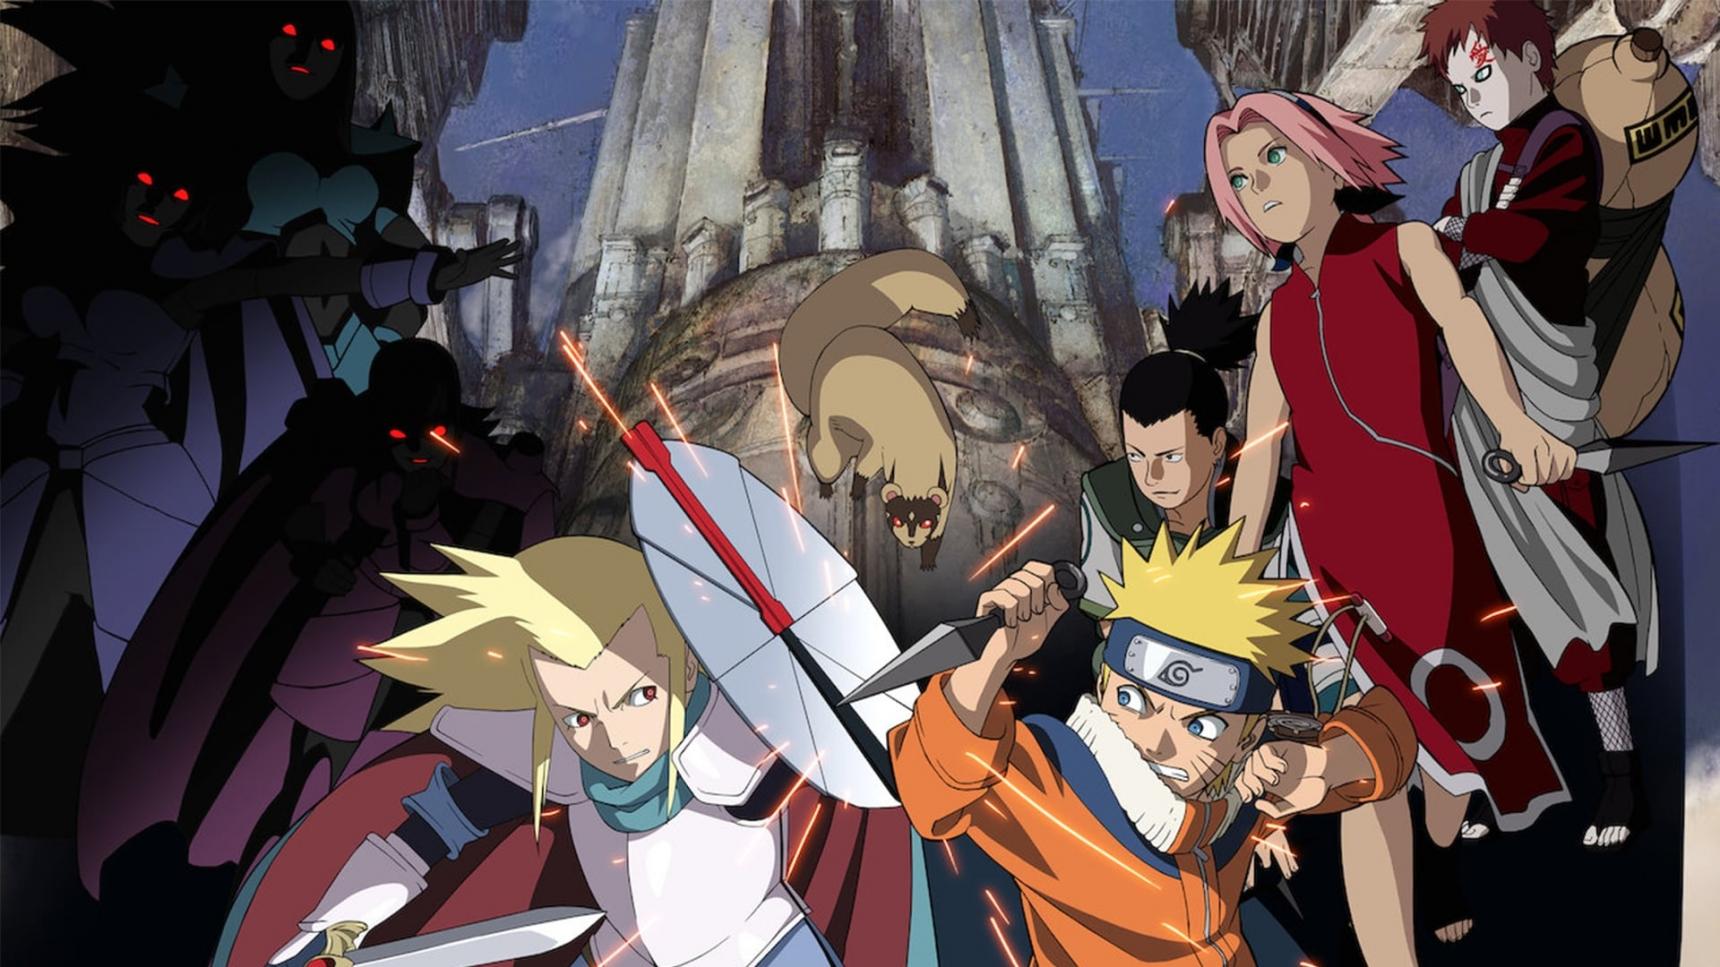 Fondo de pantalla de la película Naruto 2: Las ruinas ilusorias en lo profundo de la tierra en Cuevana 3 gratis